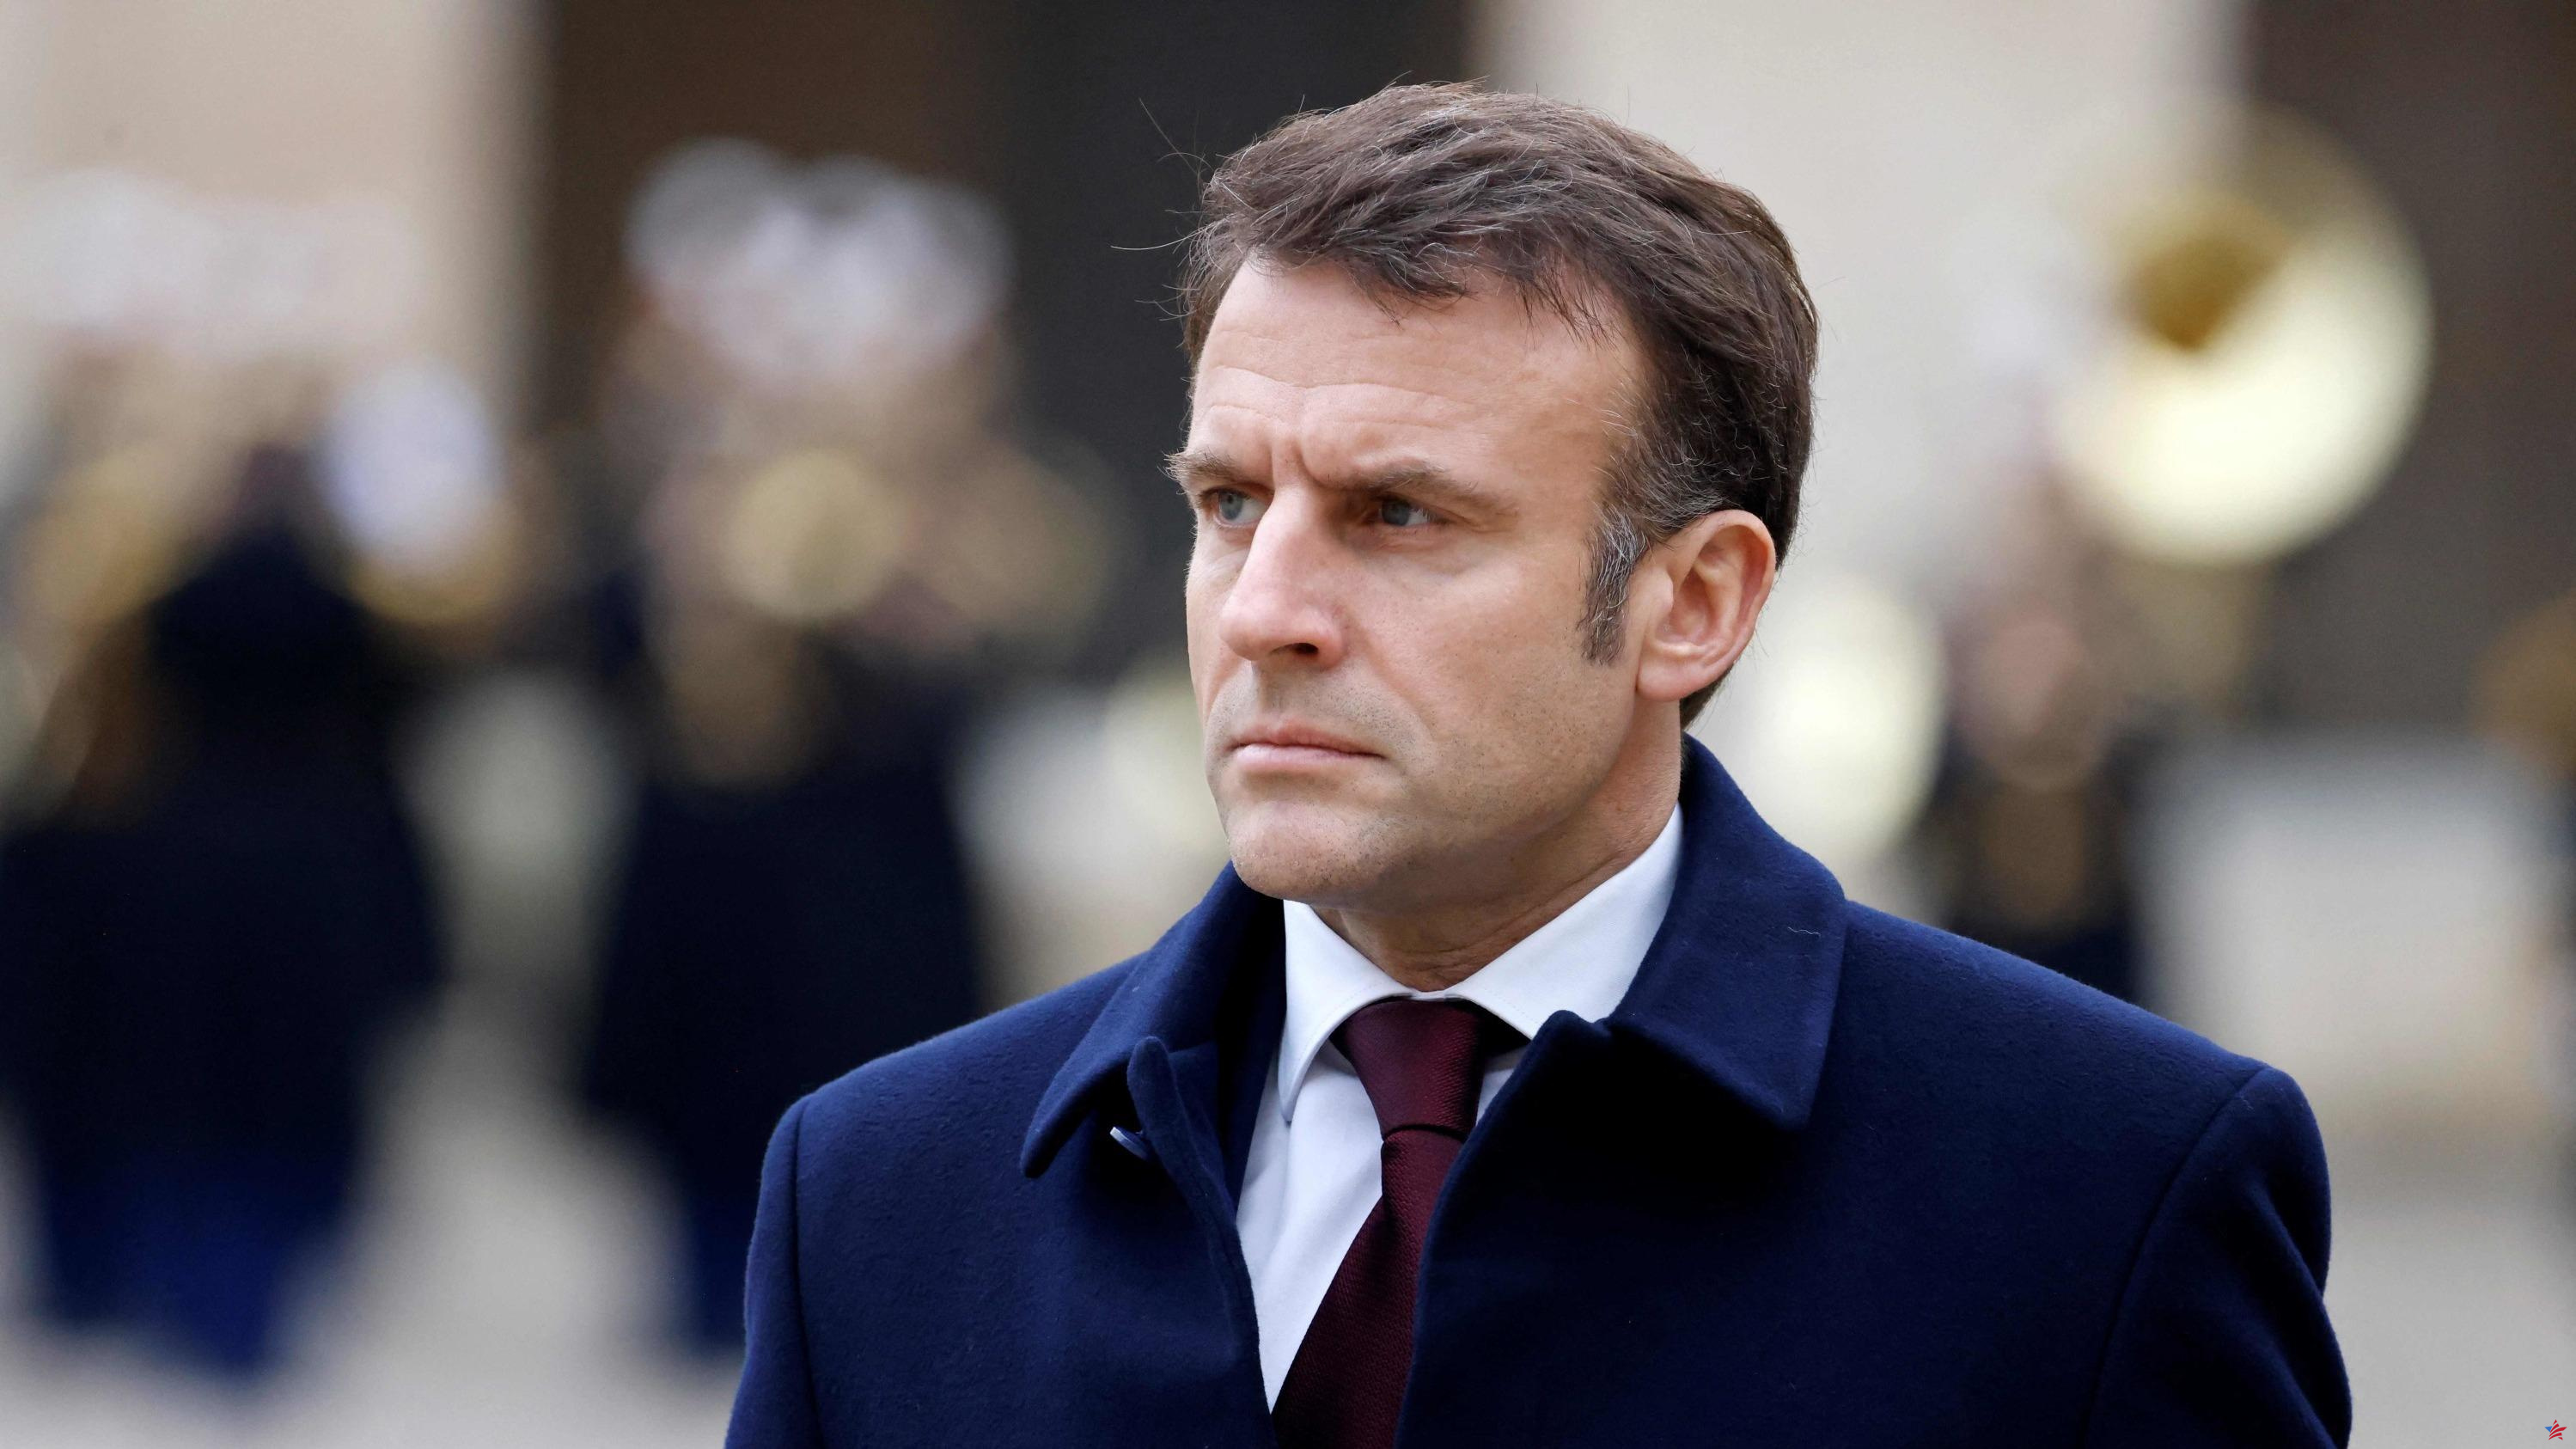 Entrevista al presidente de la República en L'Humanité: “Emmanuel dijo lo contrario de Macron”